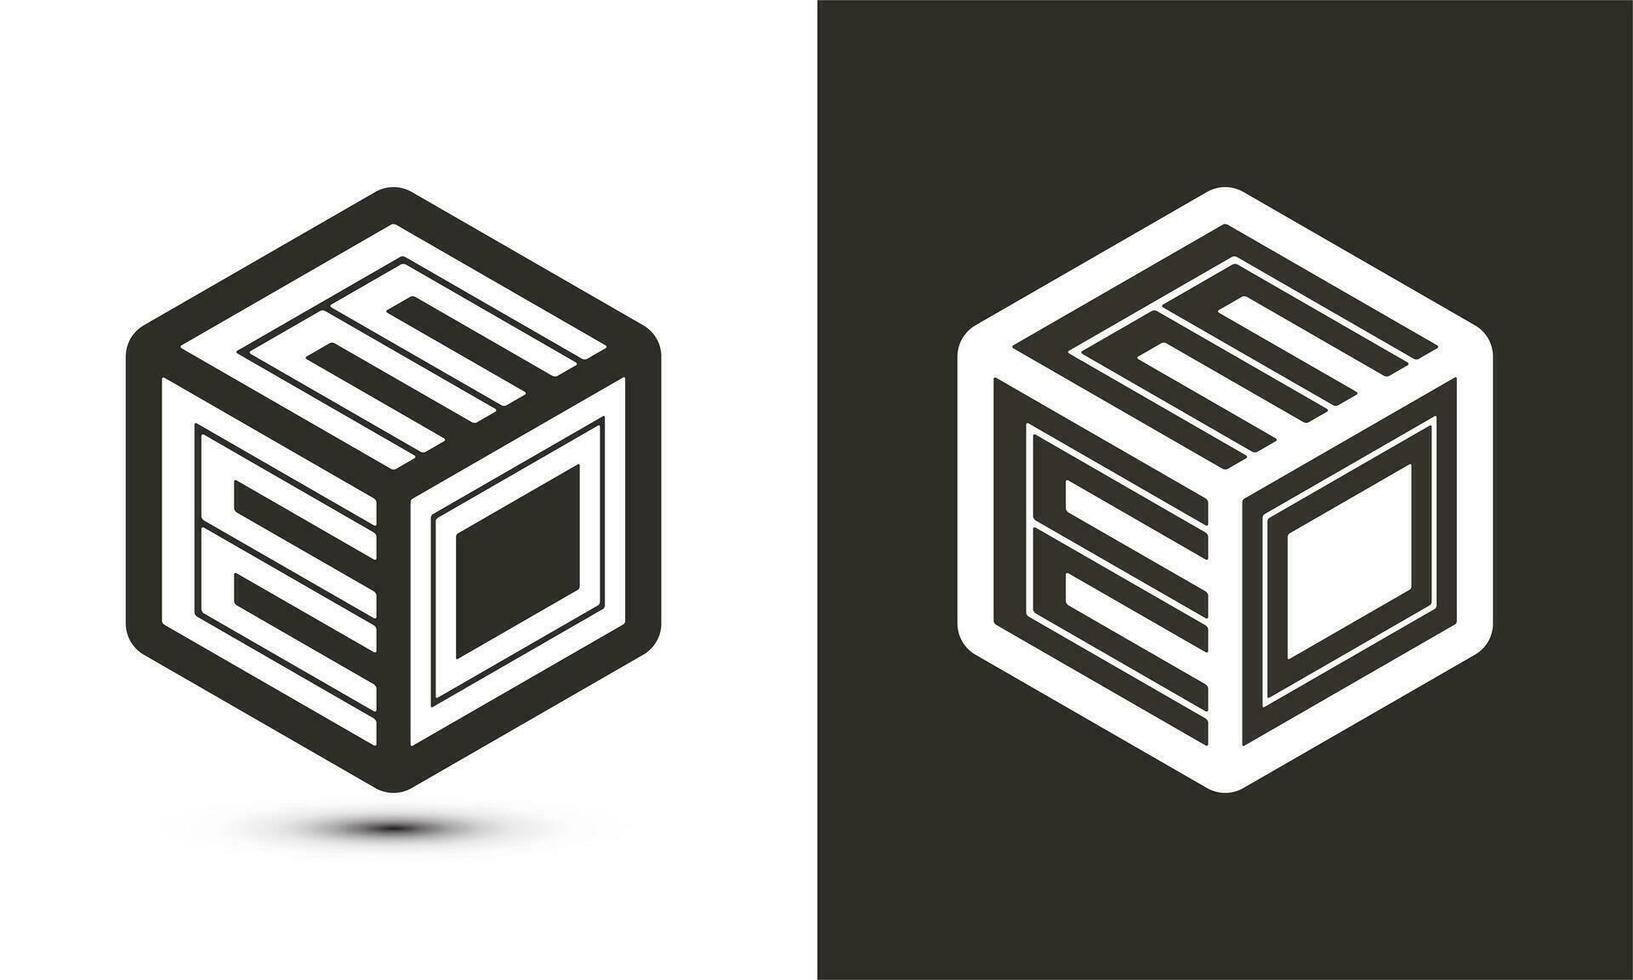 eeo brief logo ontwerp met illustrator kubus logo, vector logo modern alfabet doopvont overlappen stijl.